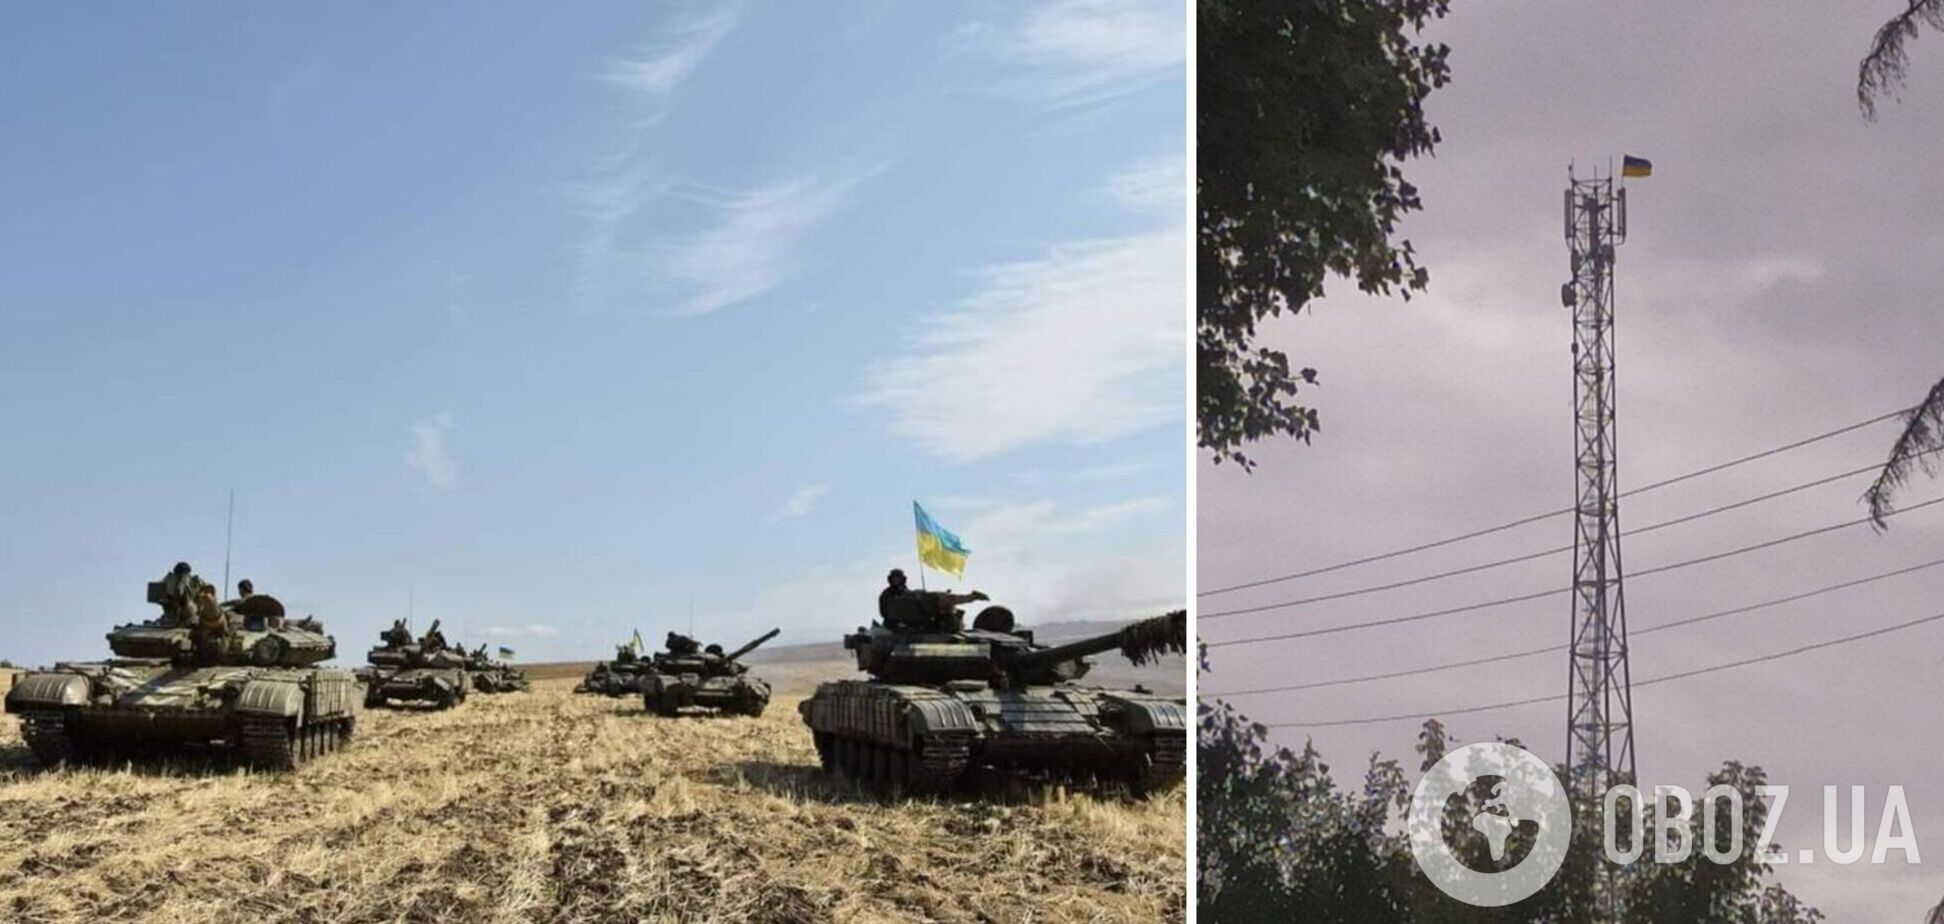 'Сватовщина ждет': Гайдай показал фото с украинским флагом в еще одном селе Луганской области